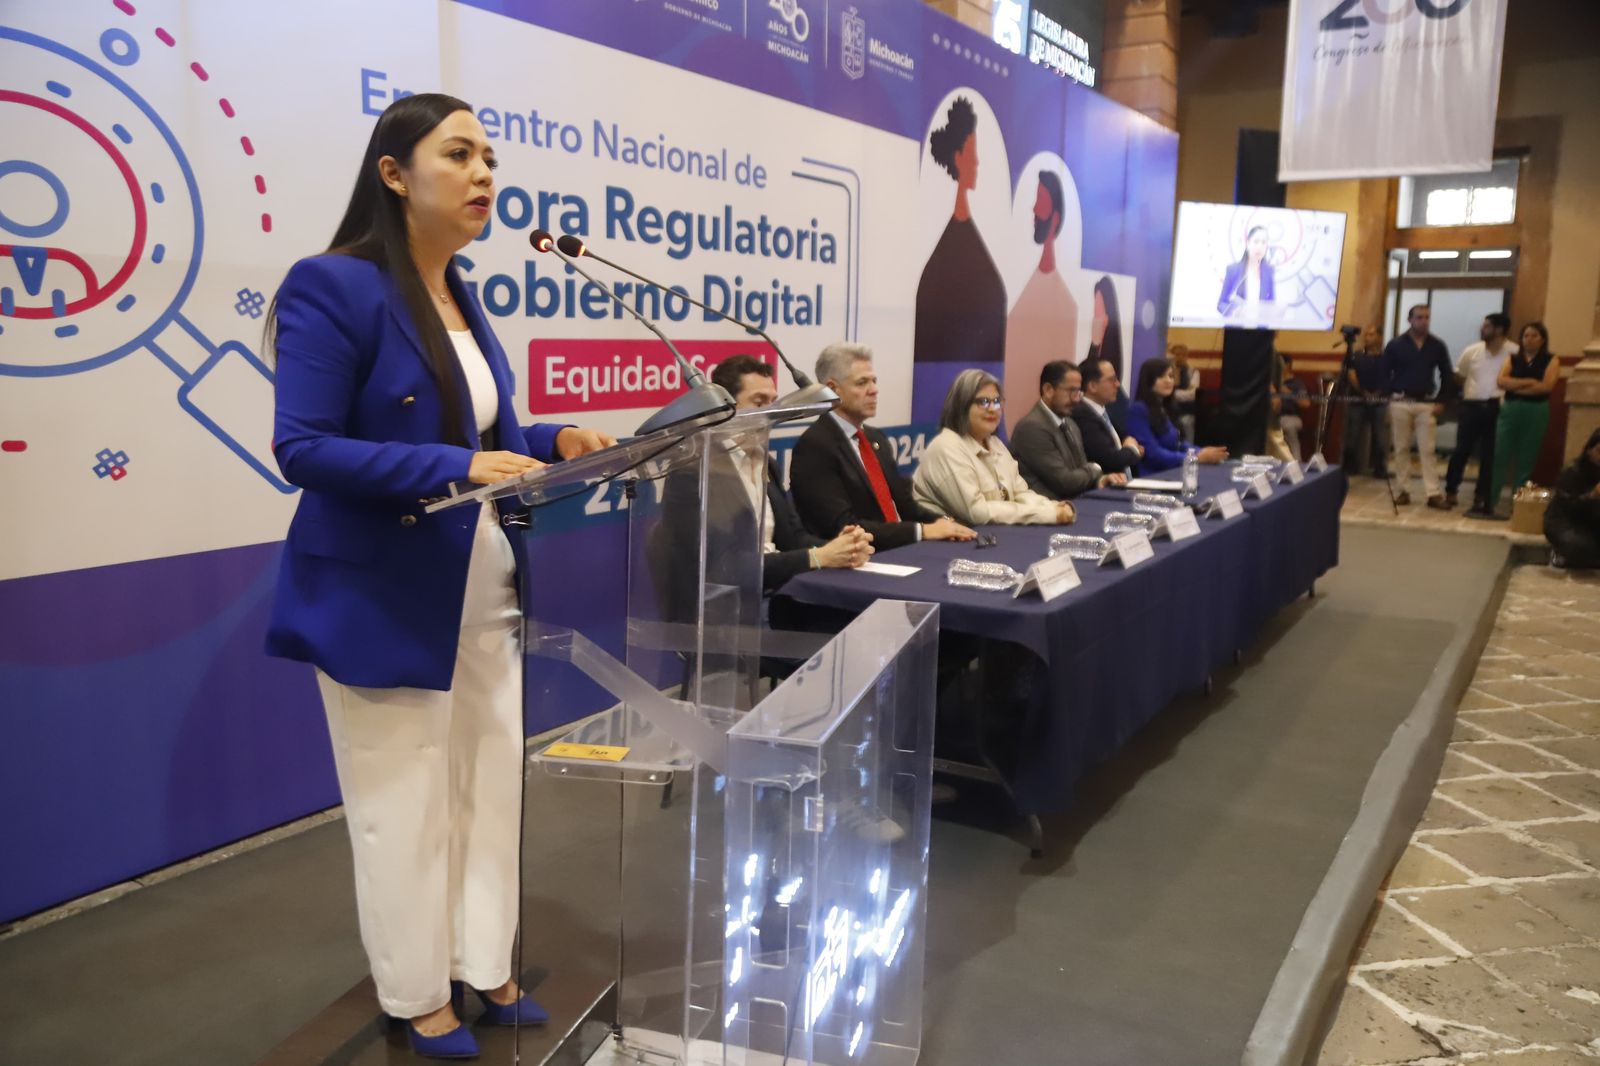 Mejora regulatoria y tecnologías digitales, binomio que garantiza un Estado eficaz y equitativo en México: 75 Legislatura